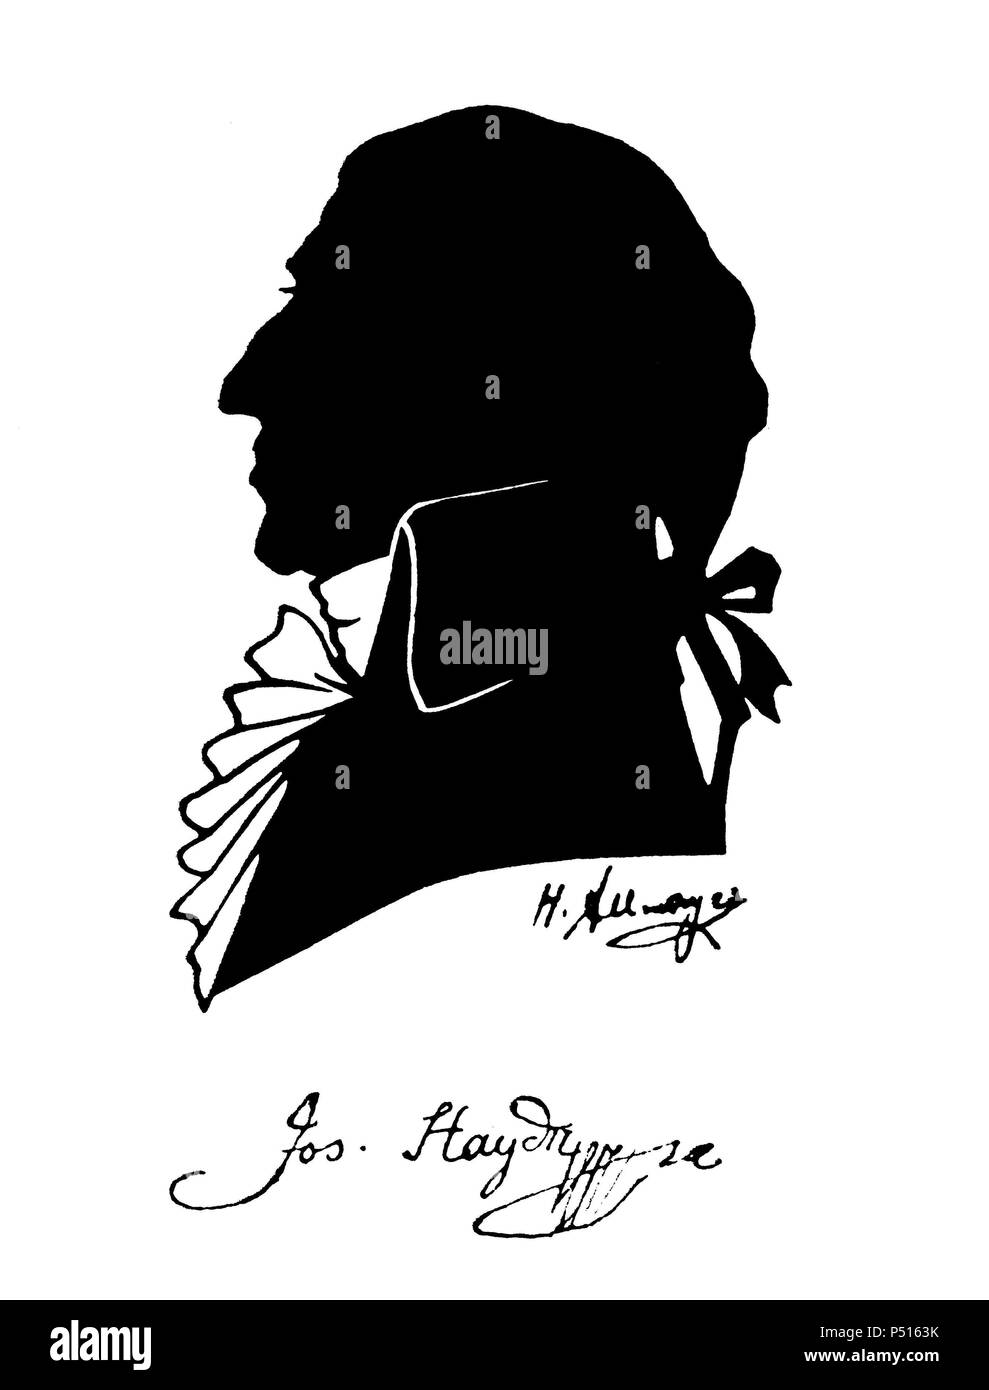 Franz Joseph Haydn (Rohrau, 1732-Viena, 1809). Compositor y director de orquesta autríaco. Fue maestro de Beethoven. Foto Stock